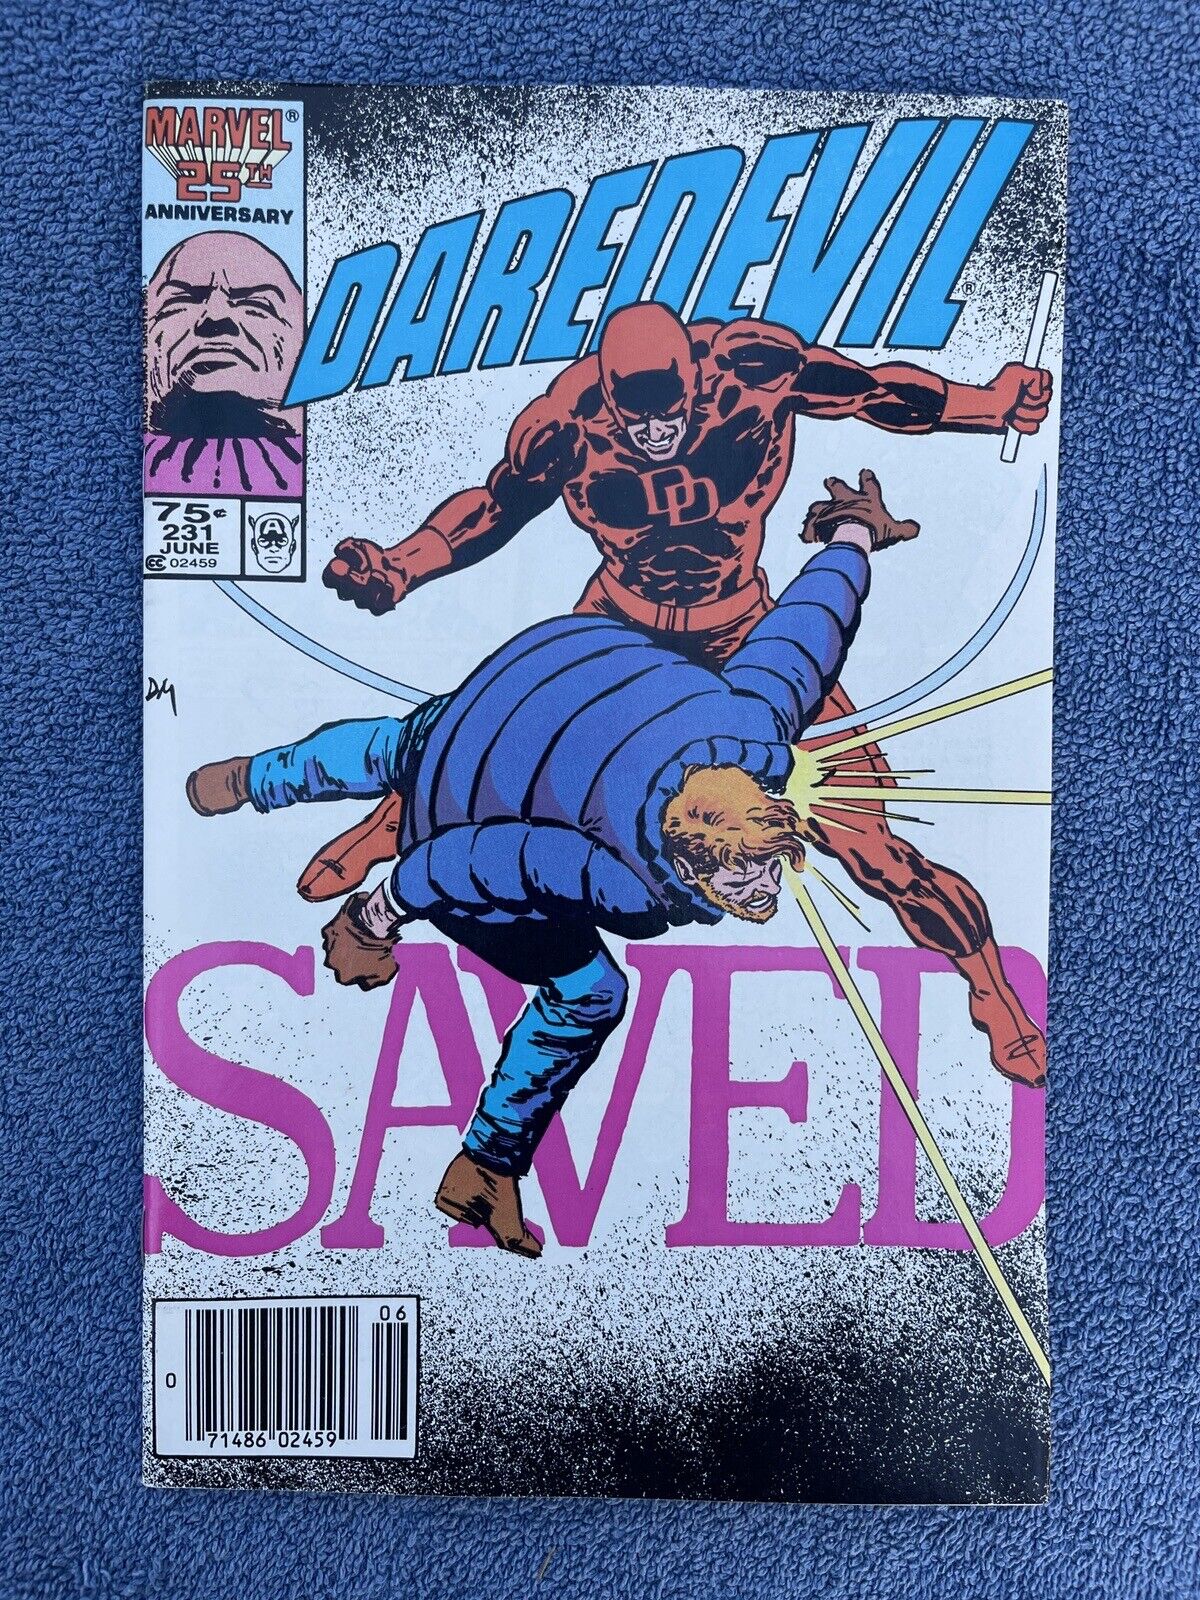 DAREDEVIL #231 (Marvel, 1986) Frank Miller & David Mazzucchelli ~ Newsstand